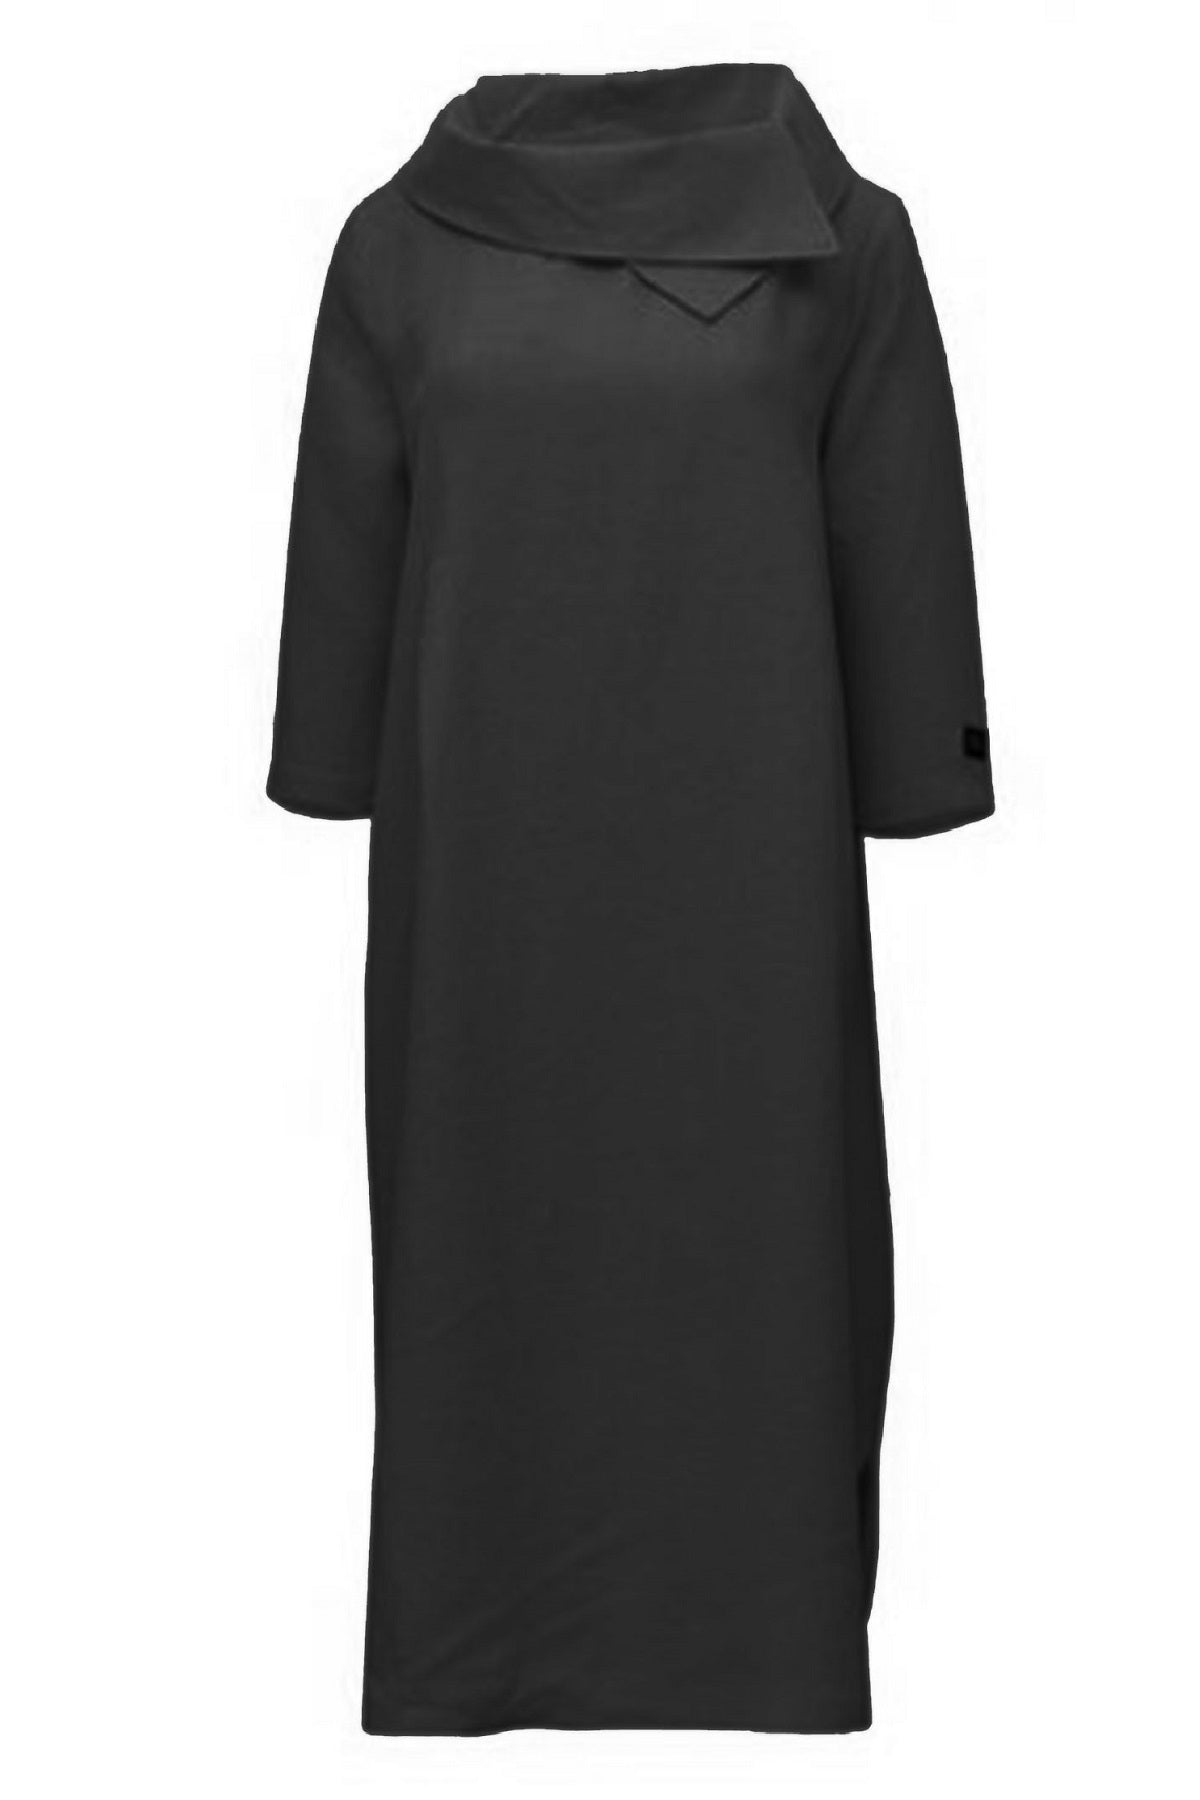 E Avantgarde kjole 12823-10, Black